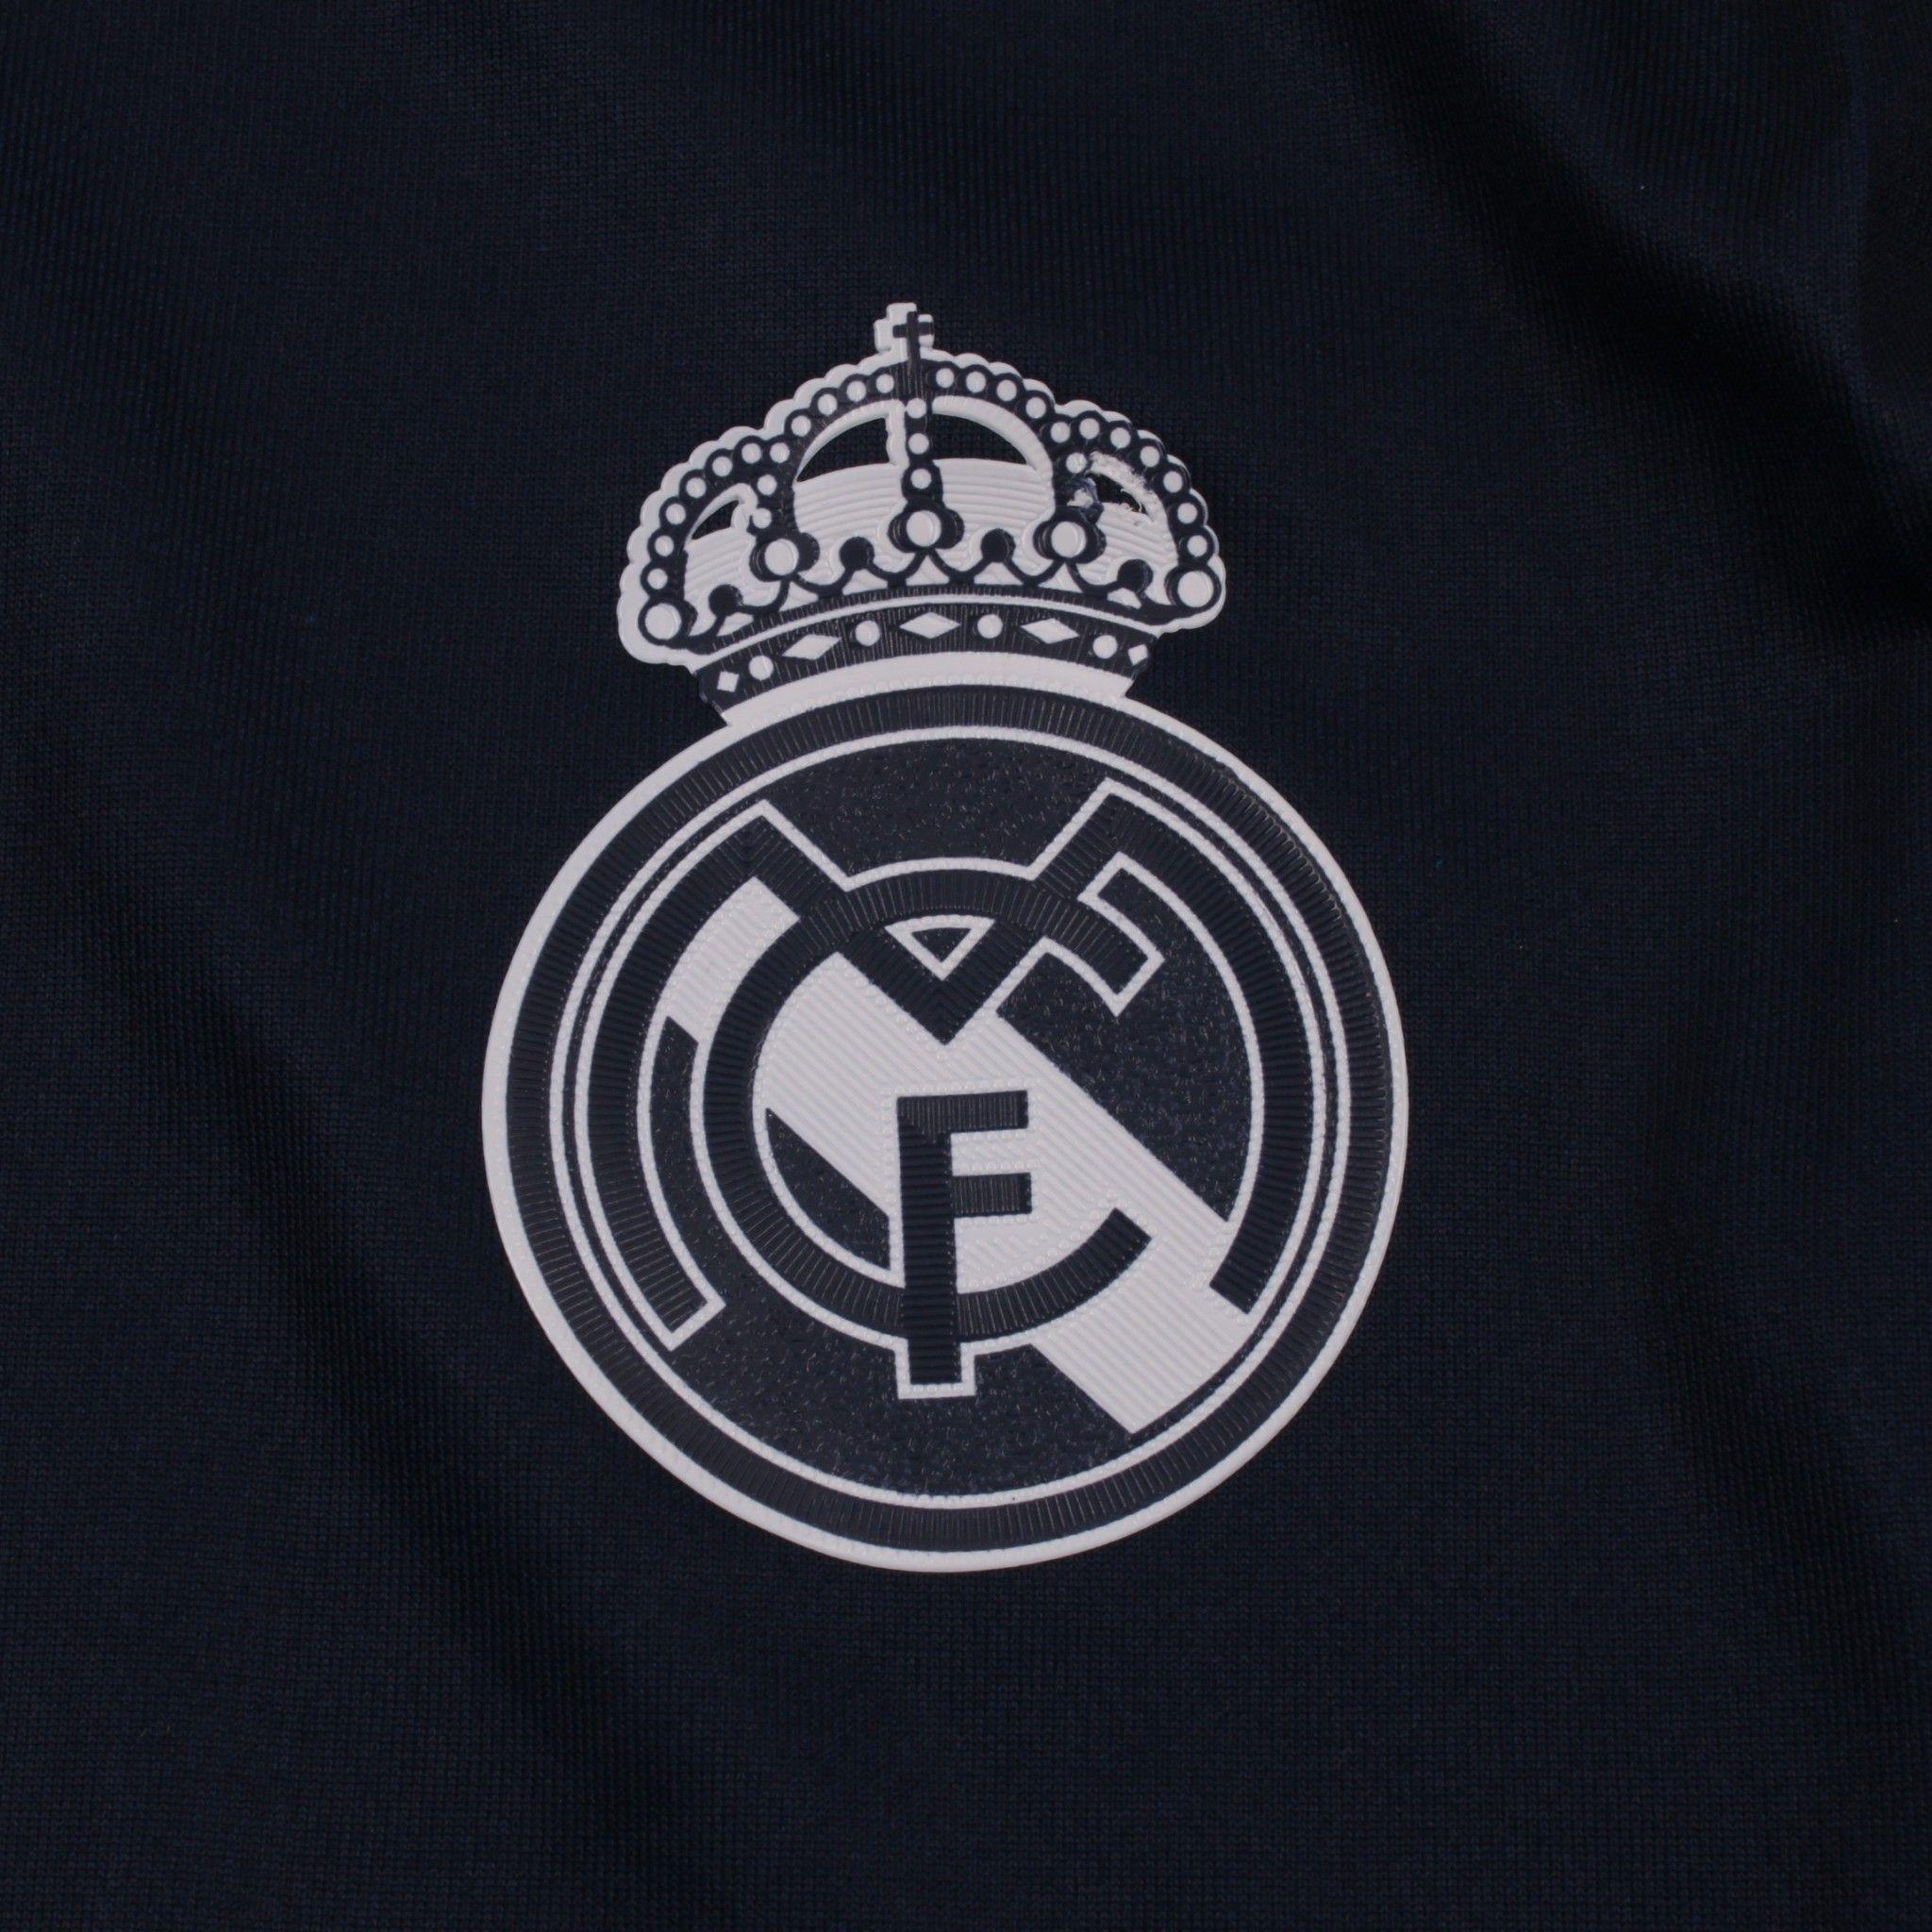 Real Madrid Logo HD Wallpaper. Wallpaper. Logos